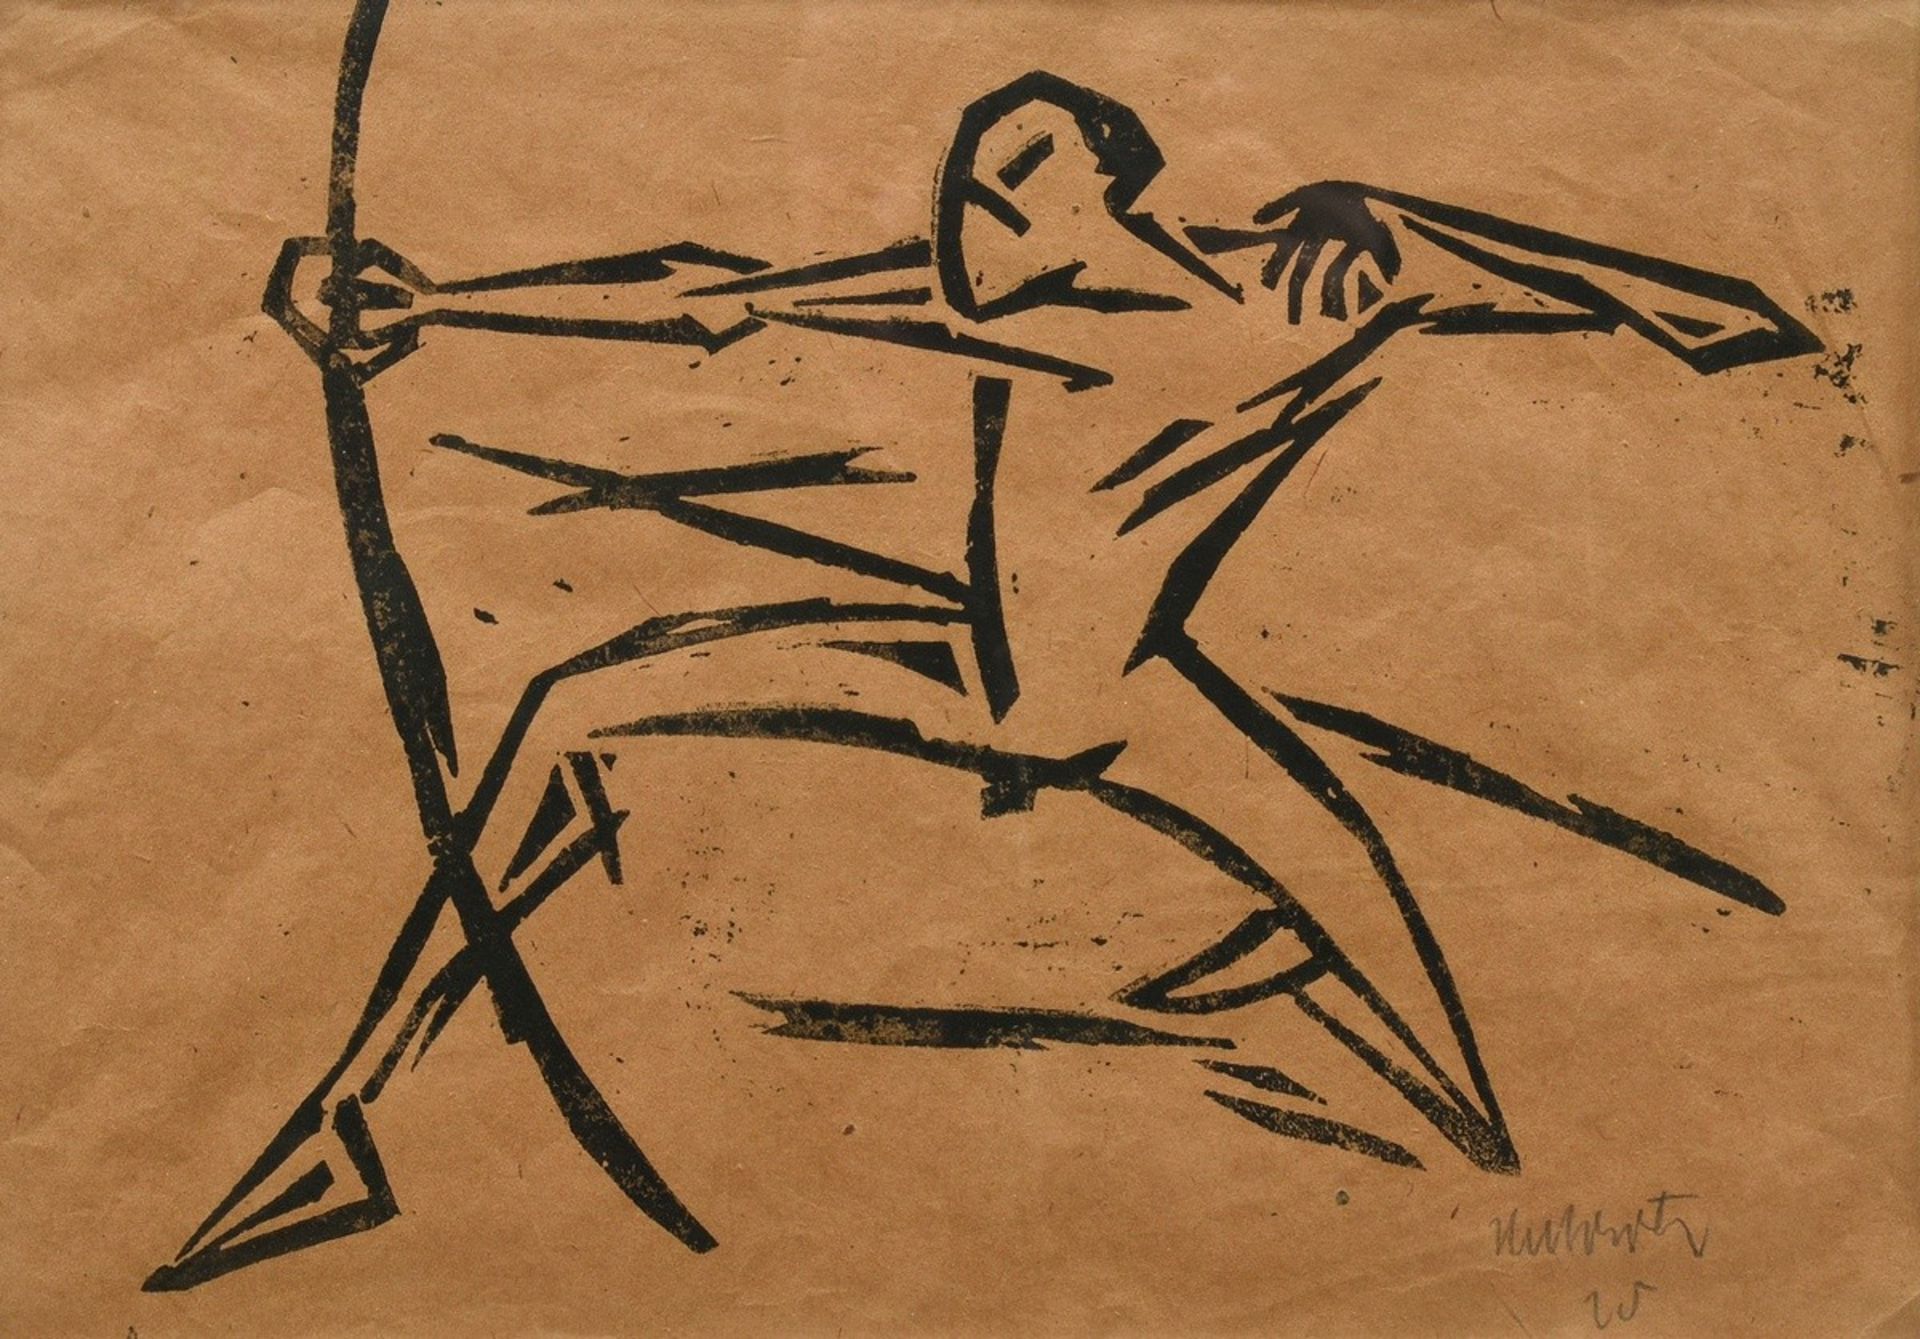 Unbekannter Künstler des frühen 20.Jh. (Hubertz?) "Bogenschütze" 1920 oder 1925, wohl Linolschnitt,